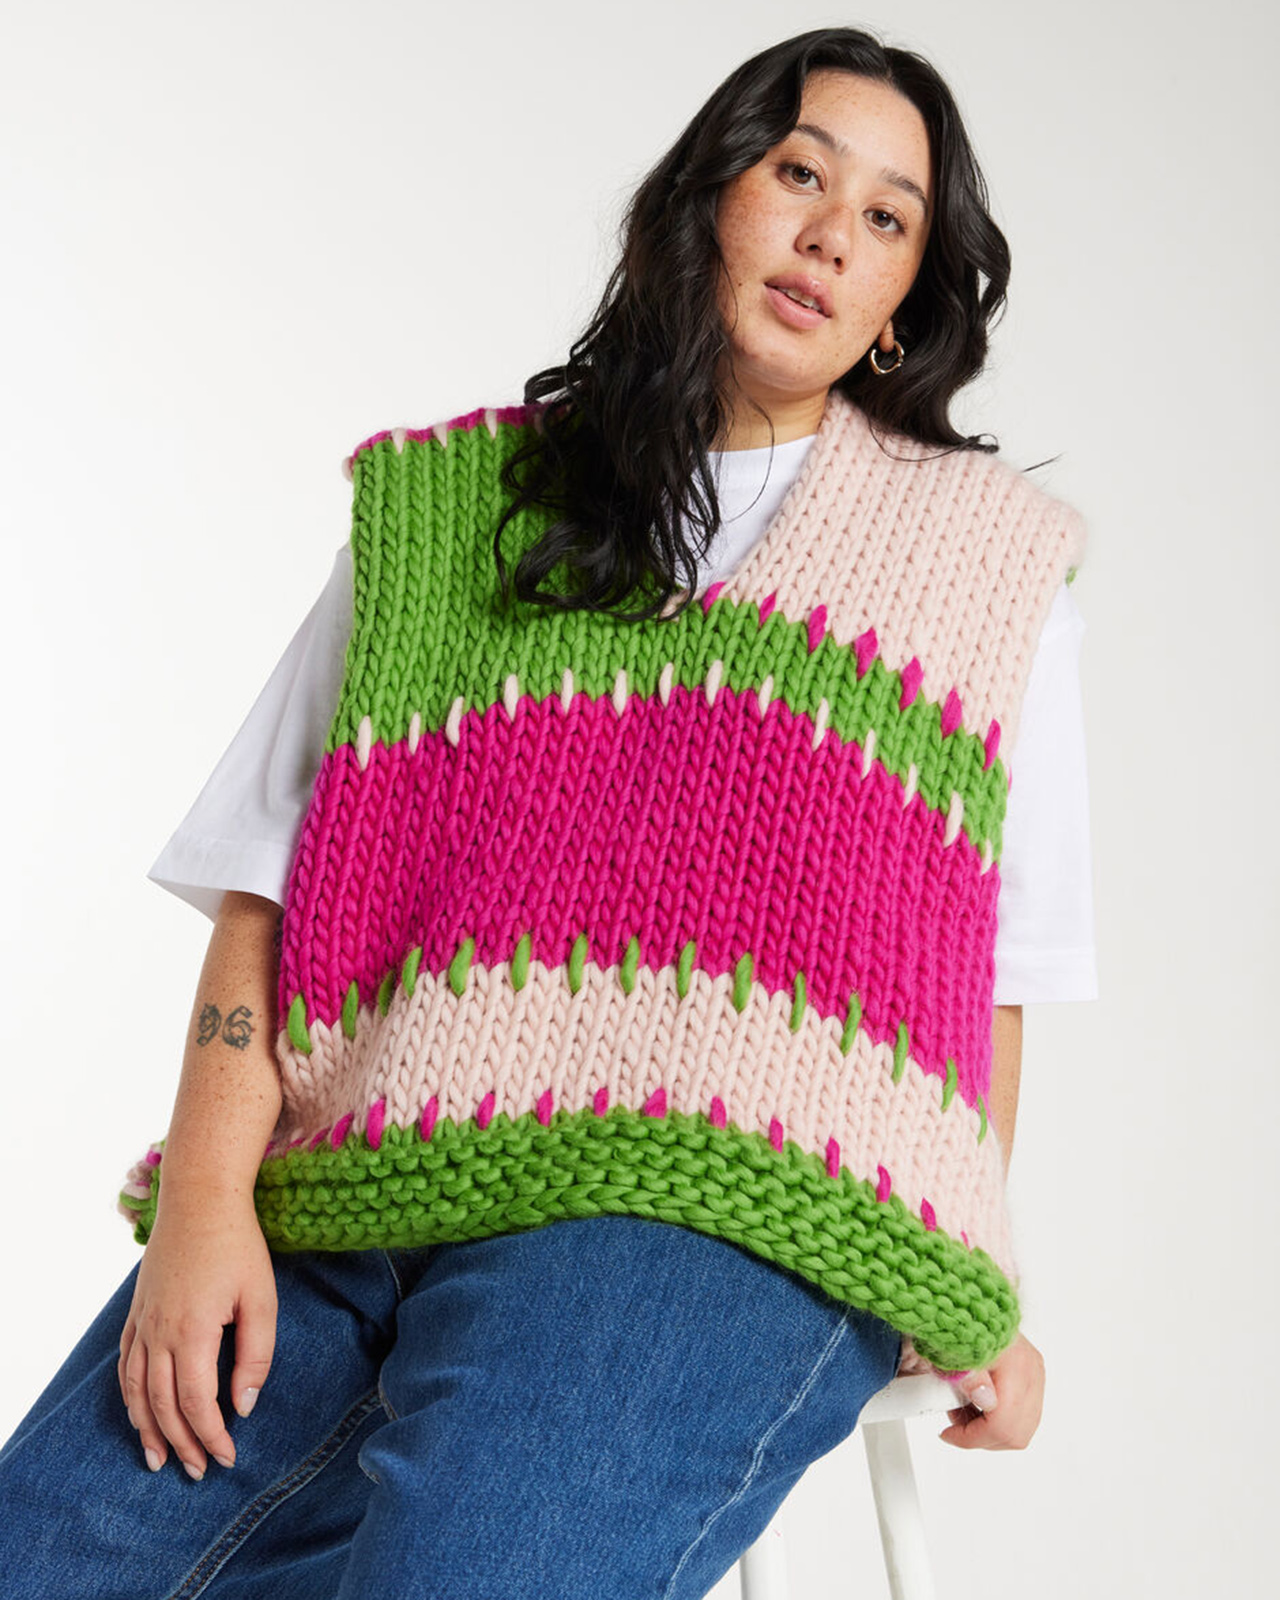 【AINE TANK / PATTERN SET】棒針で編むッチワークベストの編み物パターン